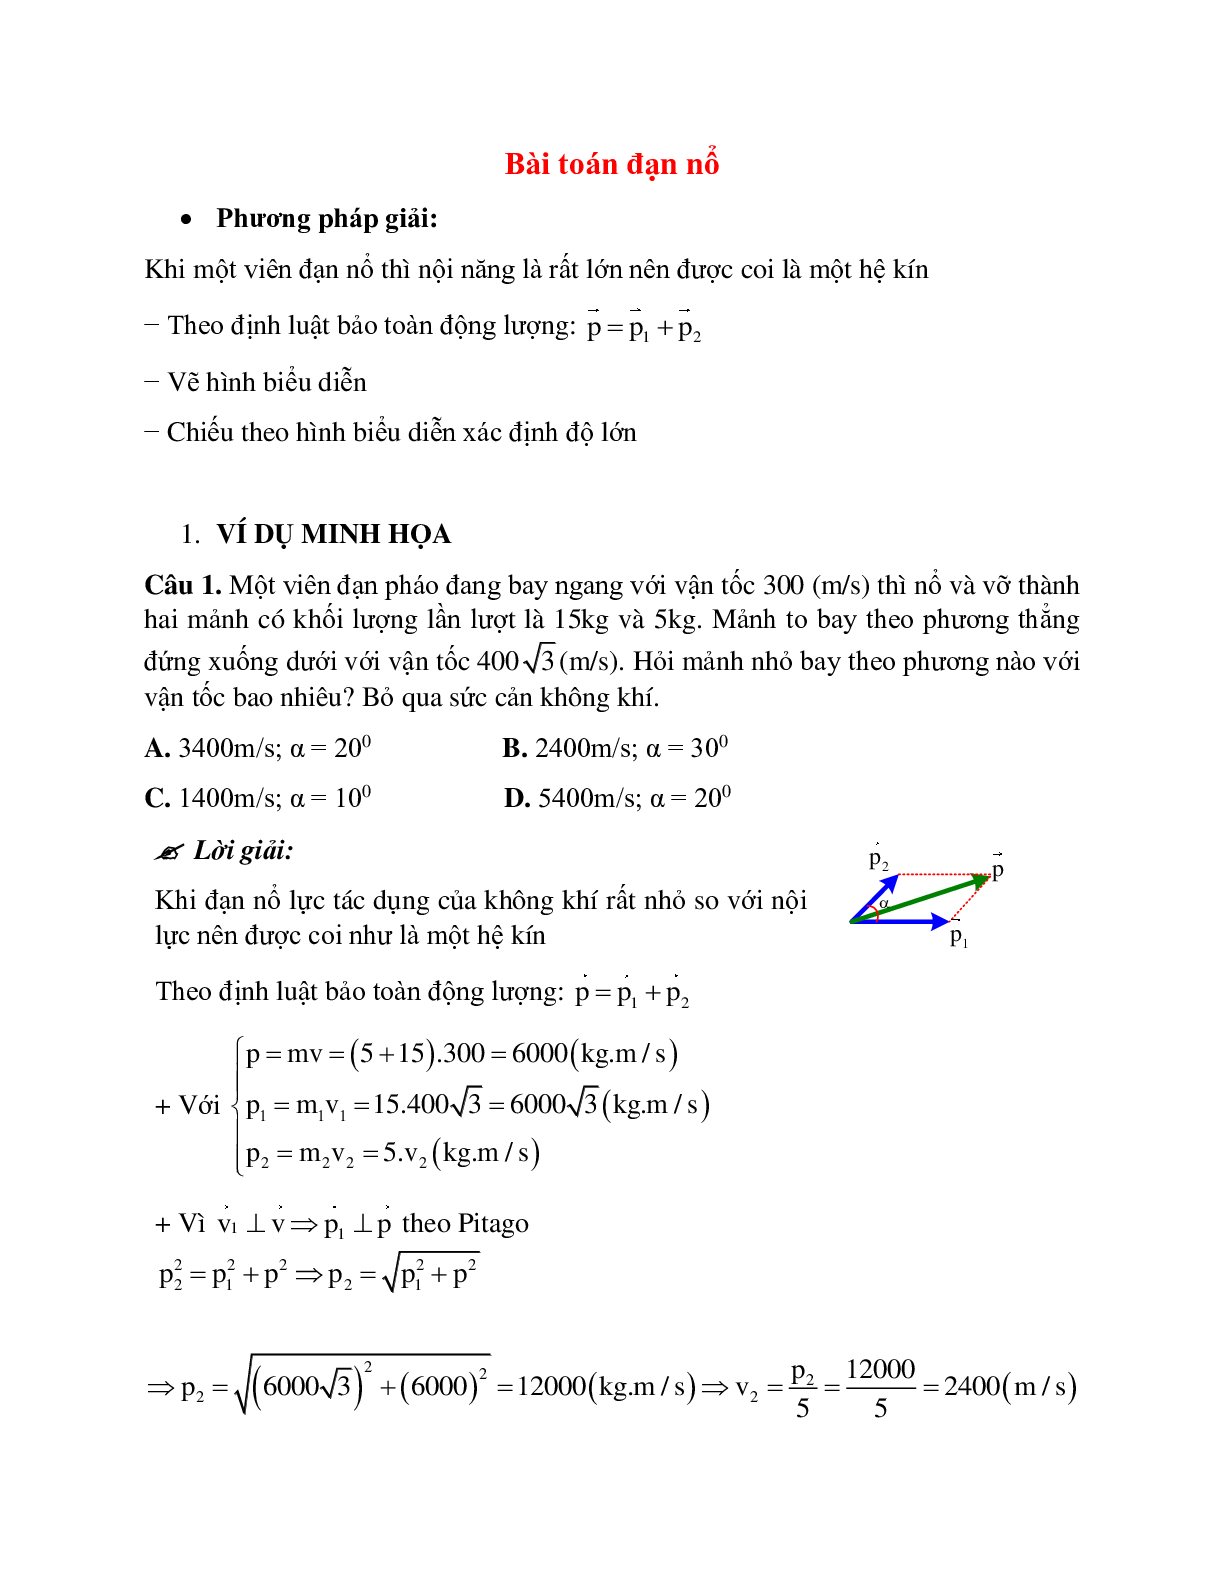 Phương pháp giải và bài tập về Bài toán đạn nổ có đáp án (trang 1)